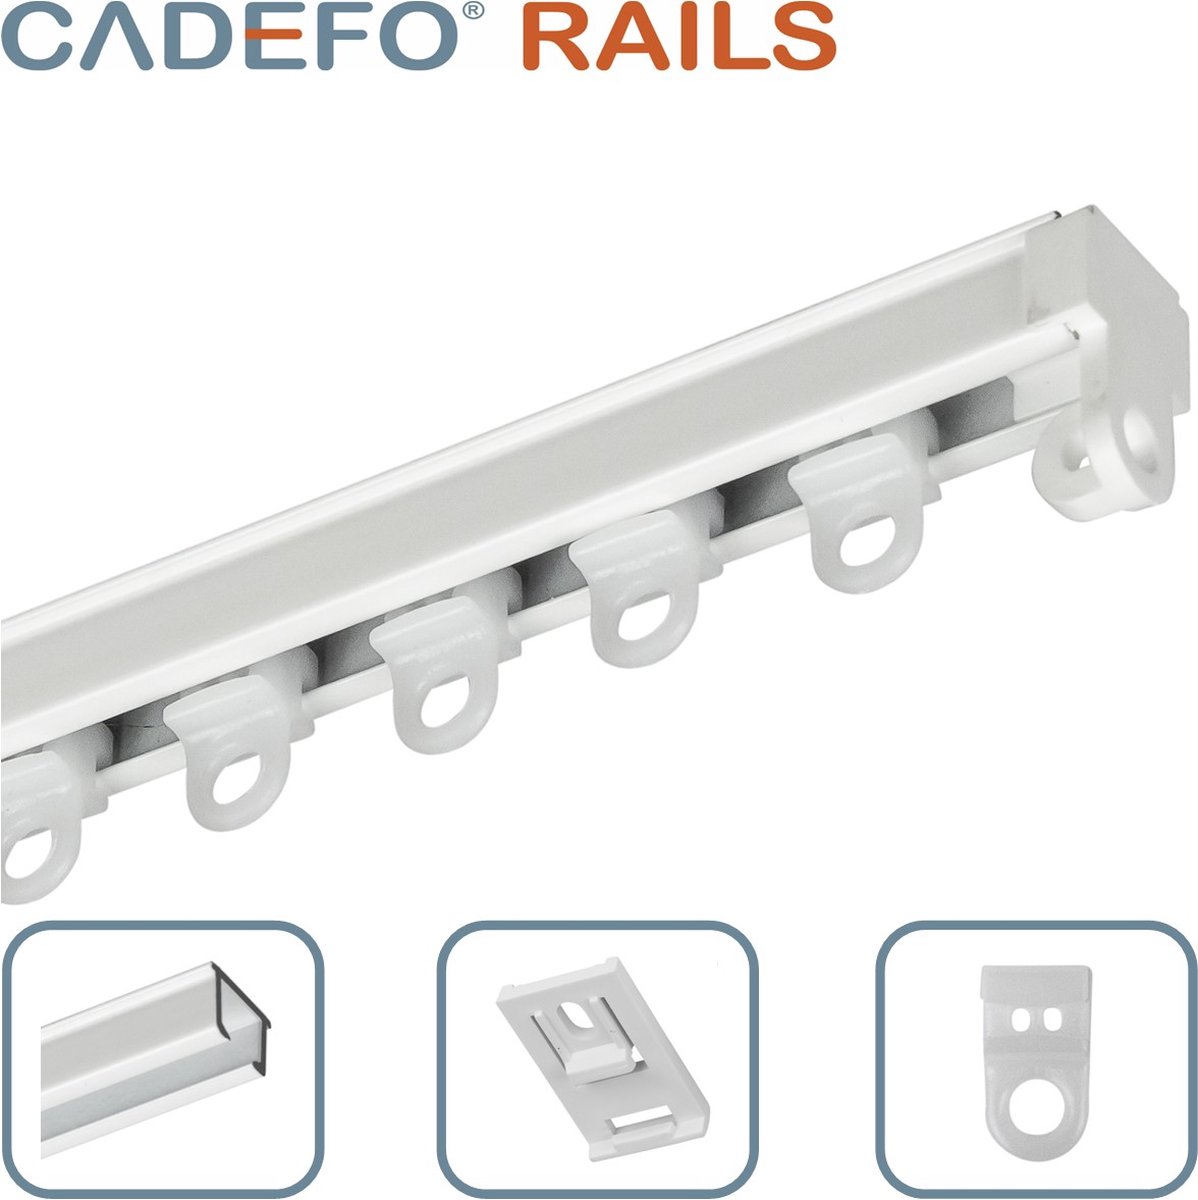 CADEFO RAILS (451 - 500 cm) Gordijnrails - Compleet op maat! - UIT 1 STUK - Leverbaar tot 6 meter - Plafondbevestiging - Lengte 489 cm